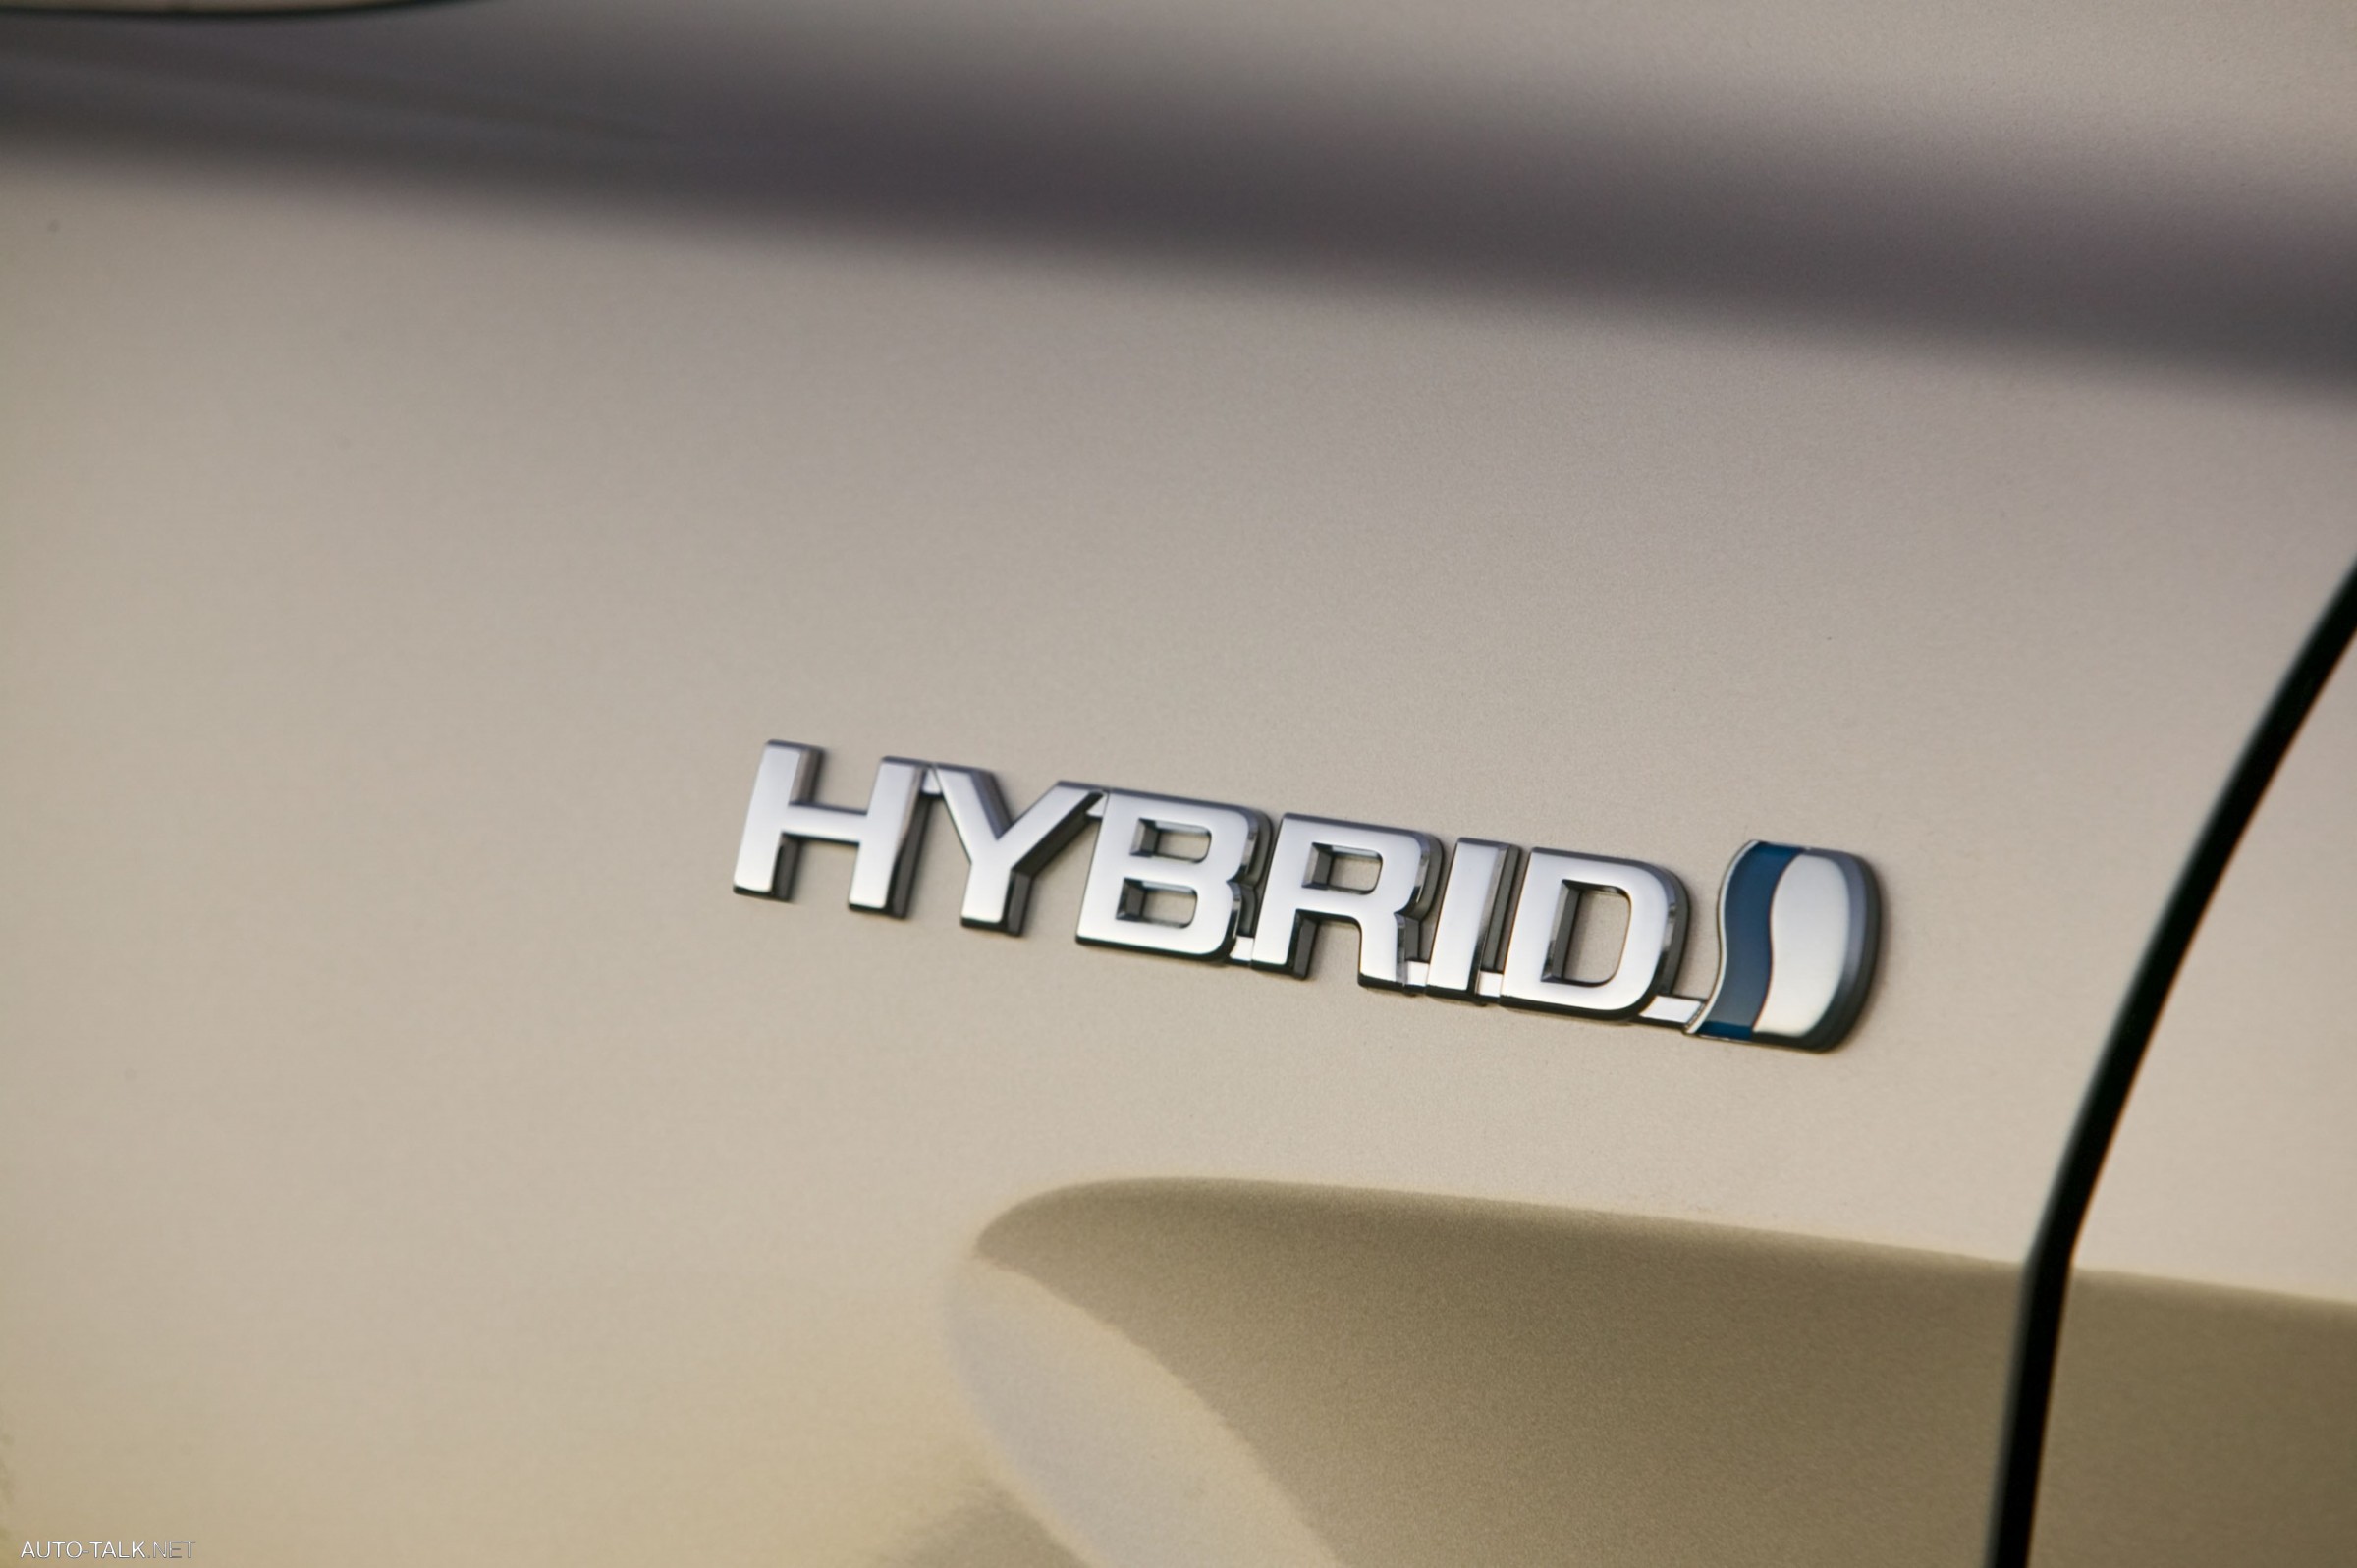 2007 Toyota Camry Hybrid